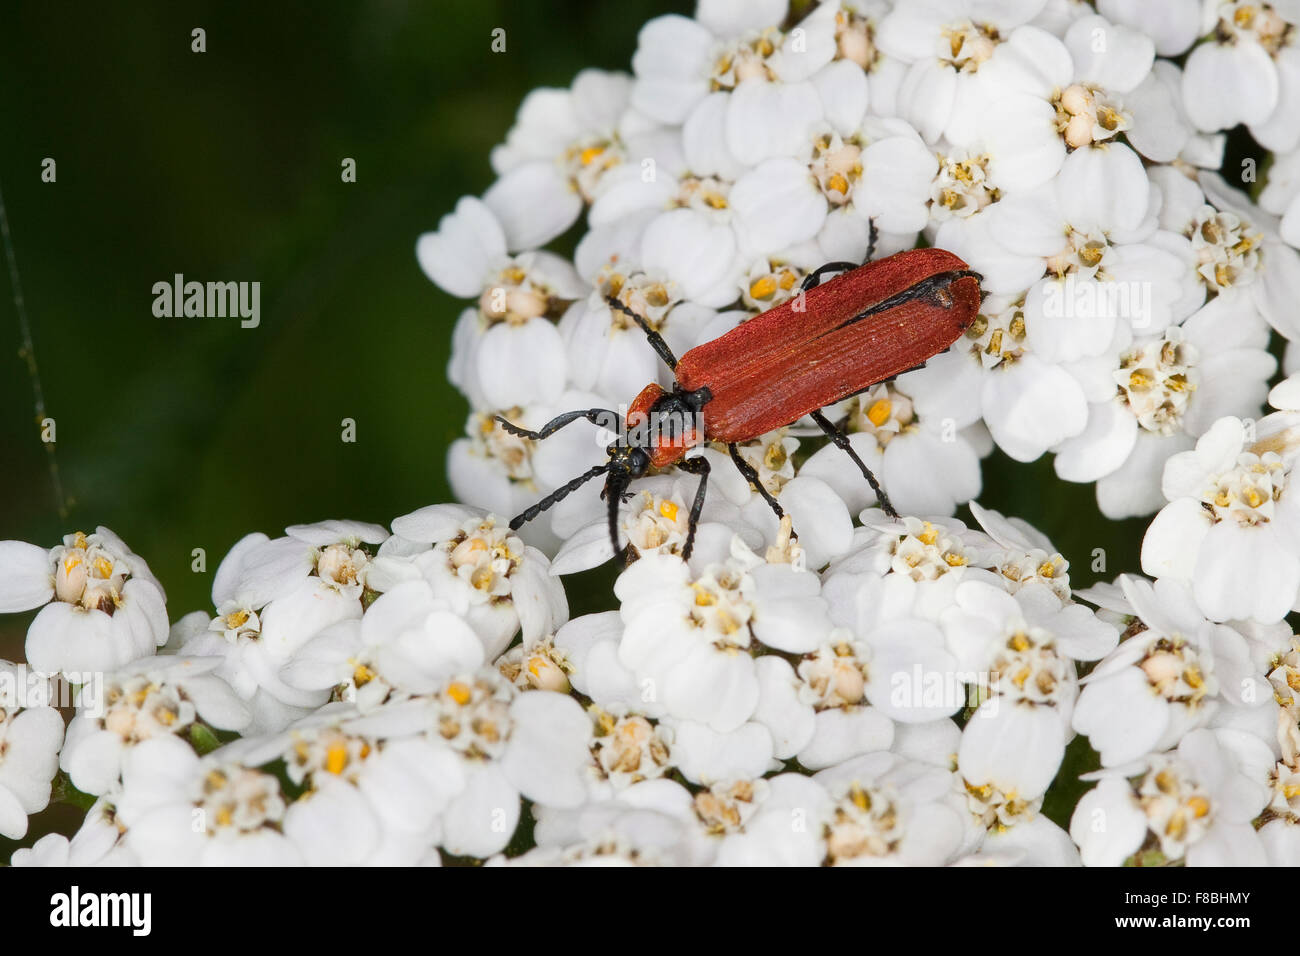 Net-winged beetle, Rüssel-Rotdeckenkäfer, Rotdeckenkäfer, Rotdecken-Käfer, Lygistopterus sanguineus, Lycidae Stock Photo